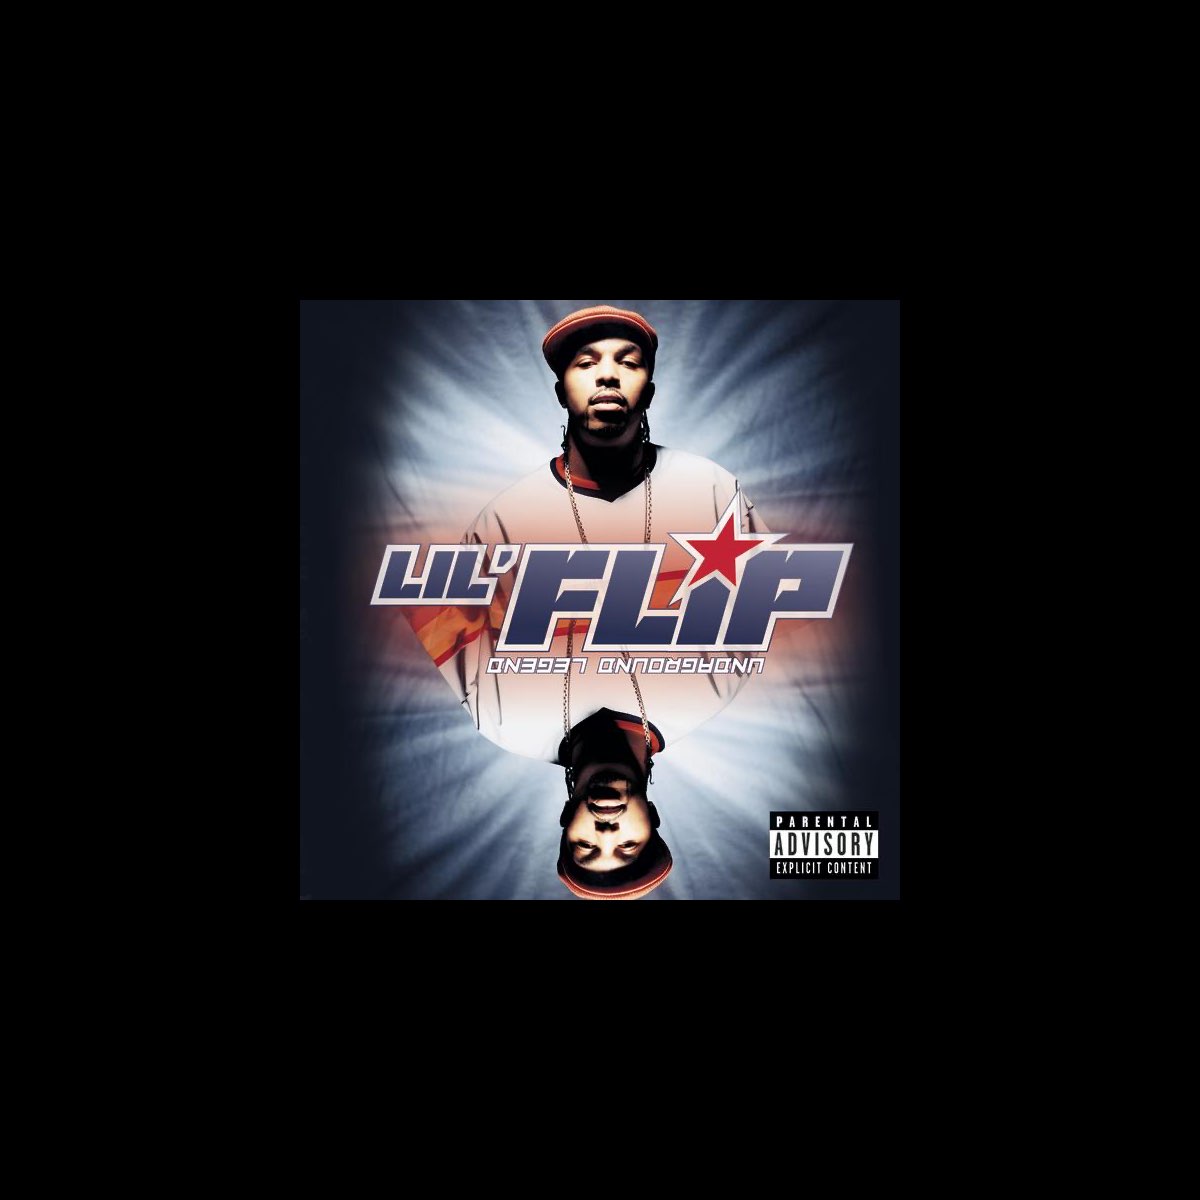 Undaground Legend - Album by Lil' Flip - Apple Music